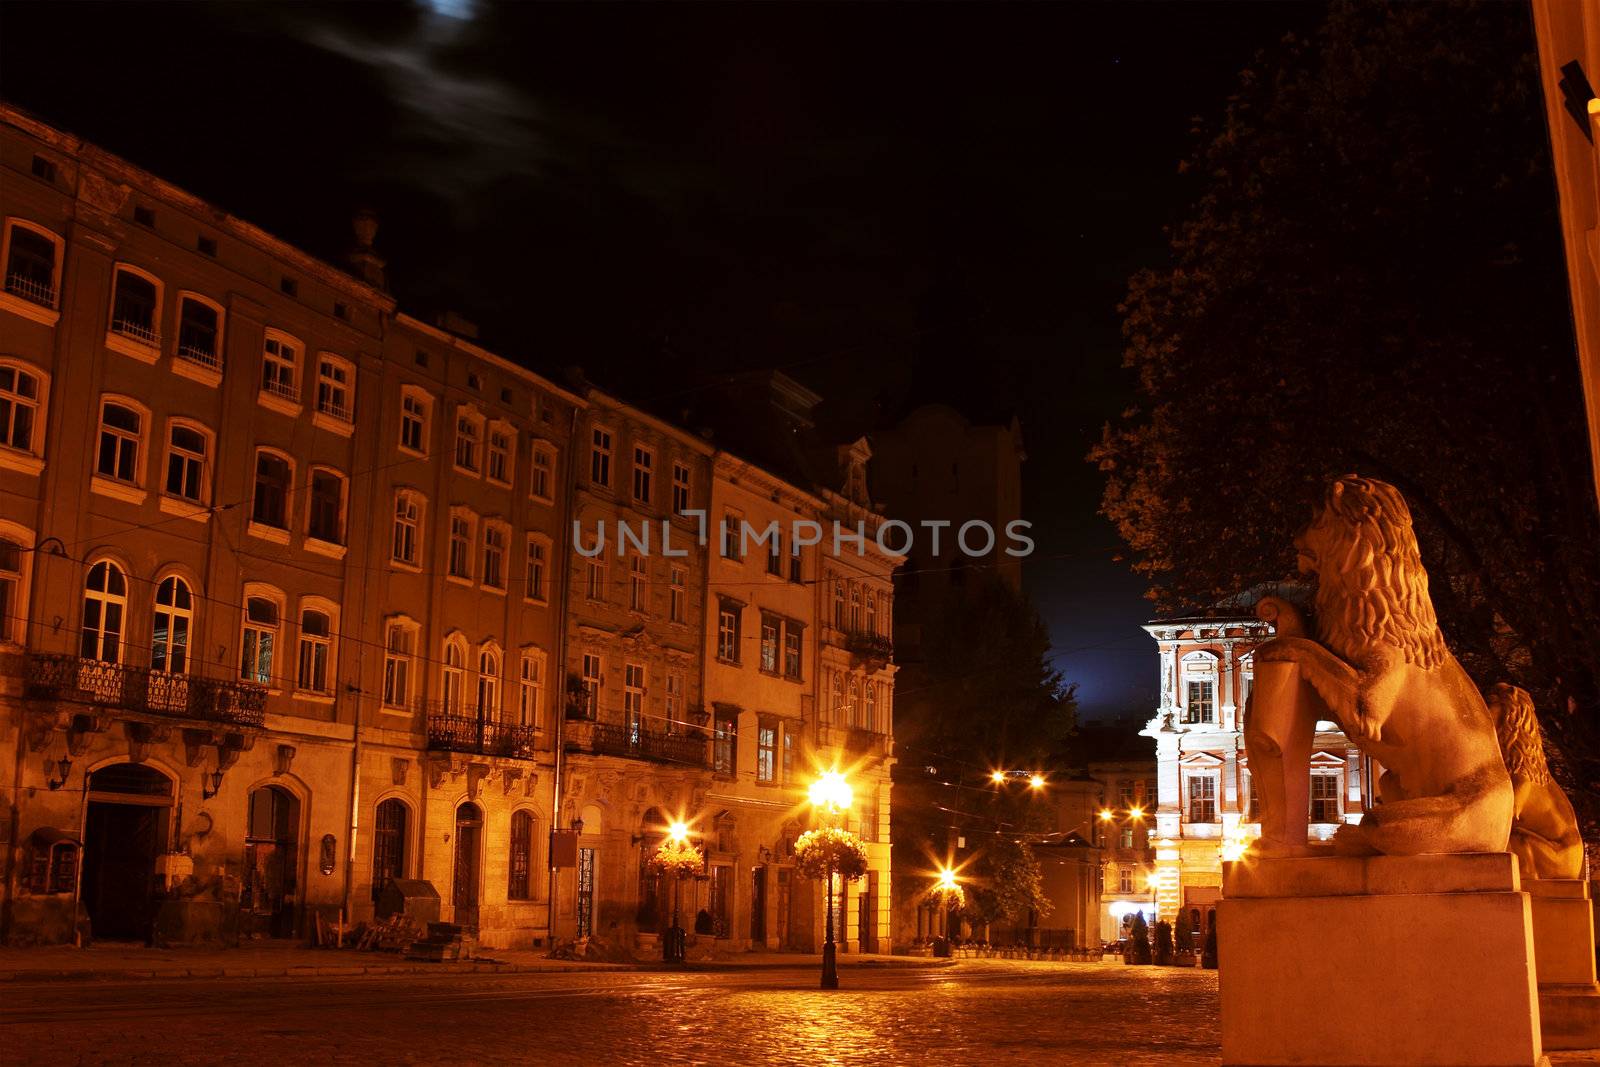 Lviv Rynok Square with City hall at night